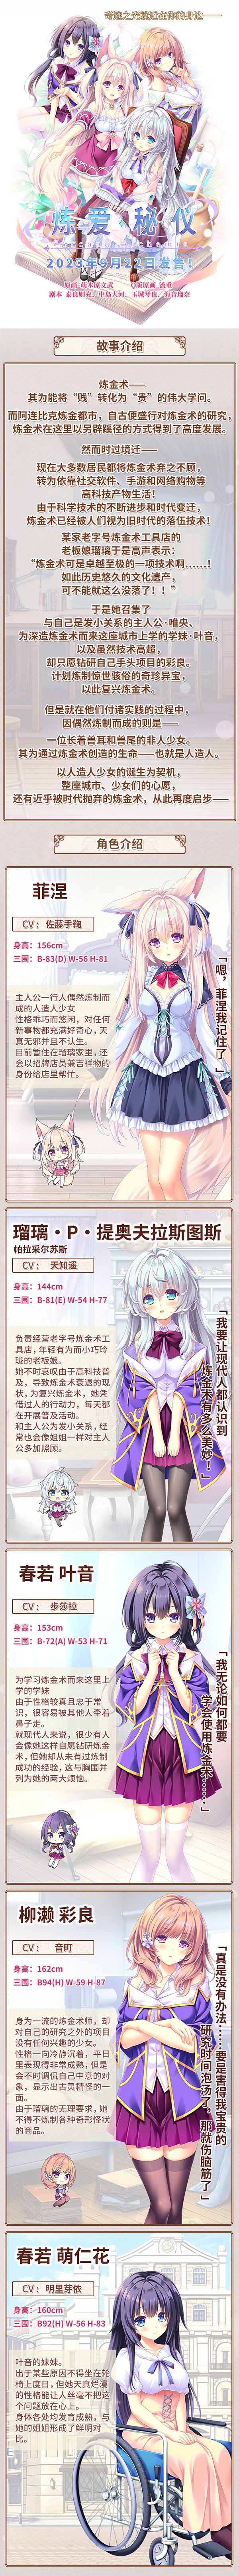 方糖社奇幻恋爱游戏《炼爱秘仪》Steam版9月22日发售 支持中文